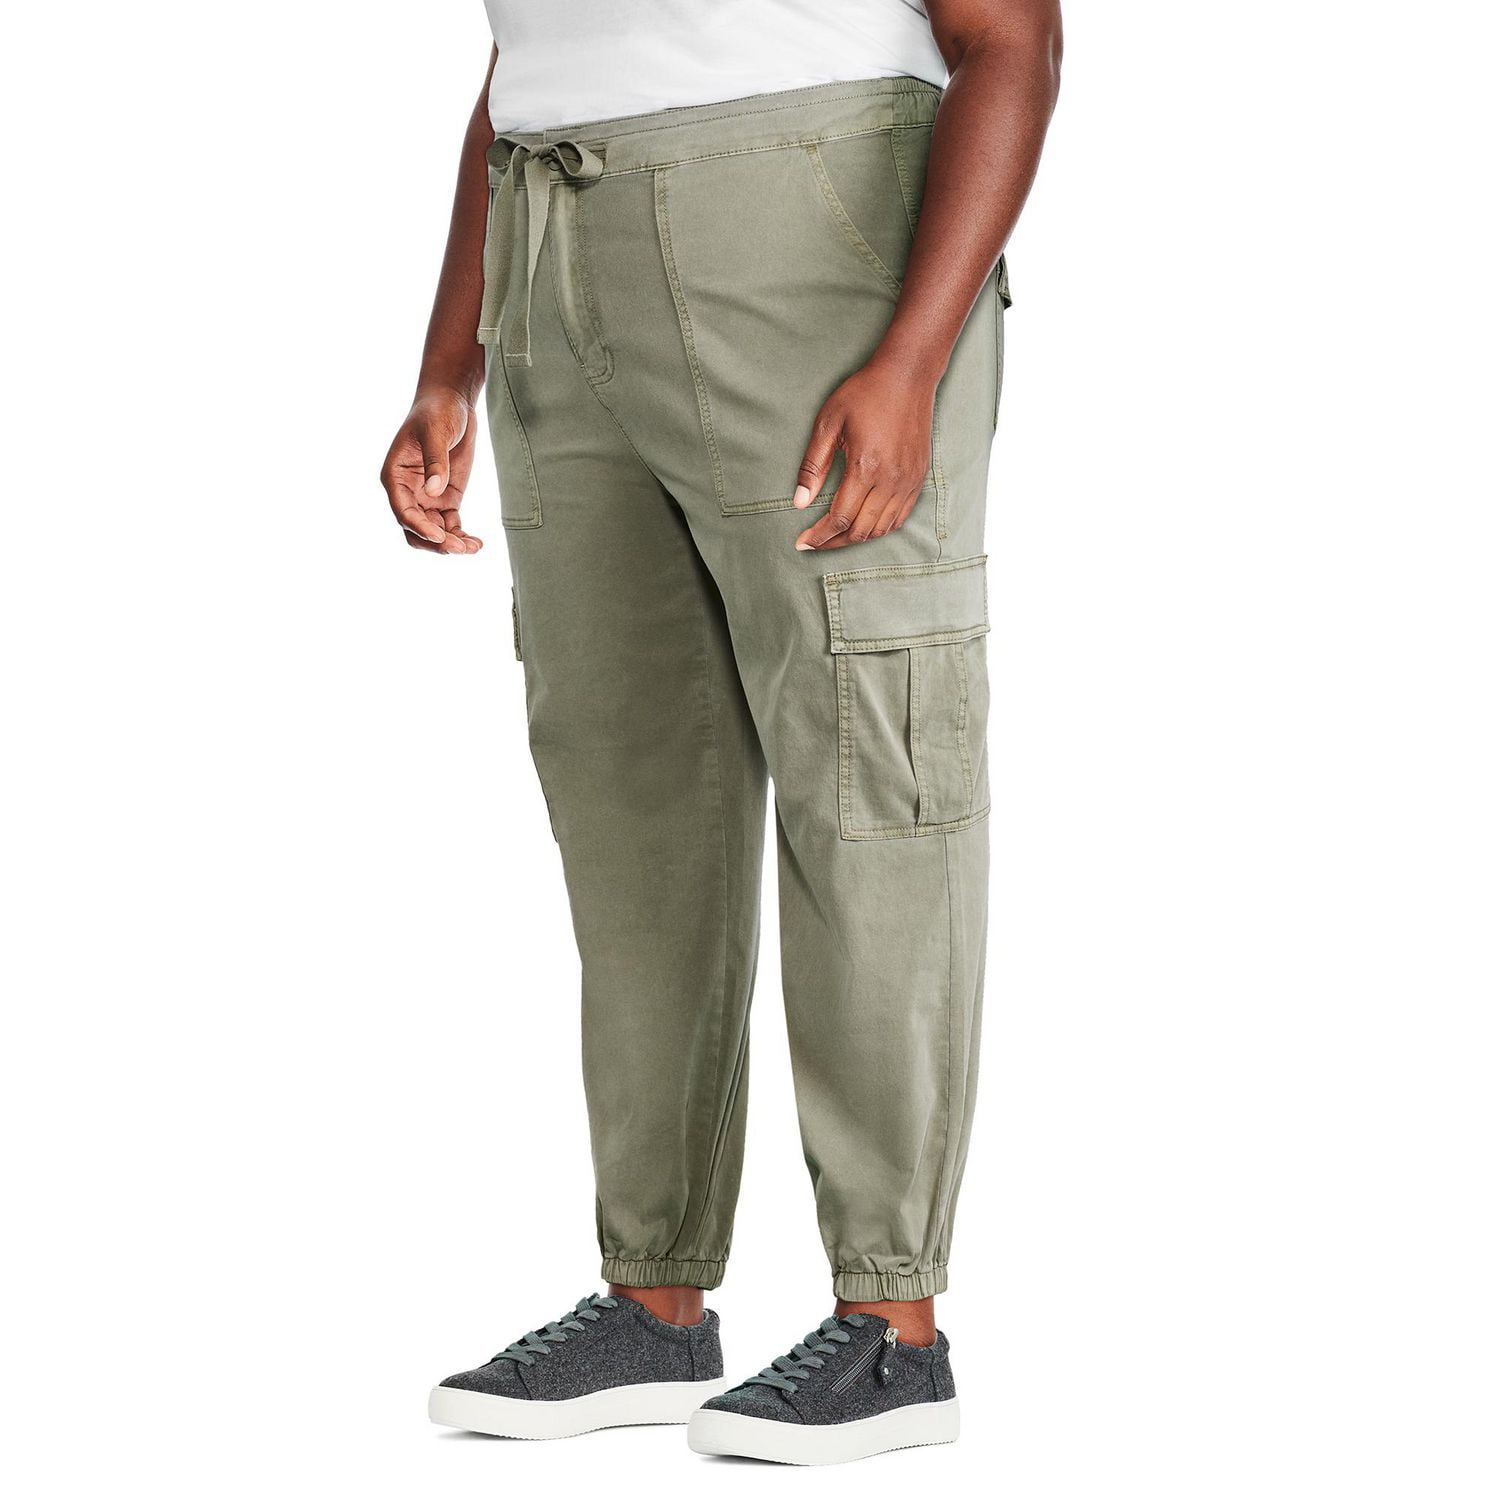 Devil Men's & Boy's Relaxed Fit Cotton Cargo Jogger Jeans Pants-Beige